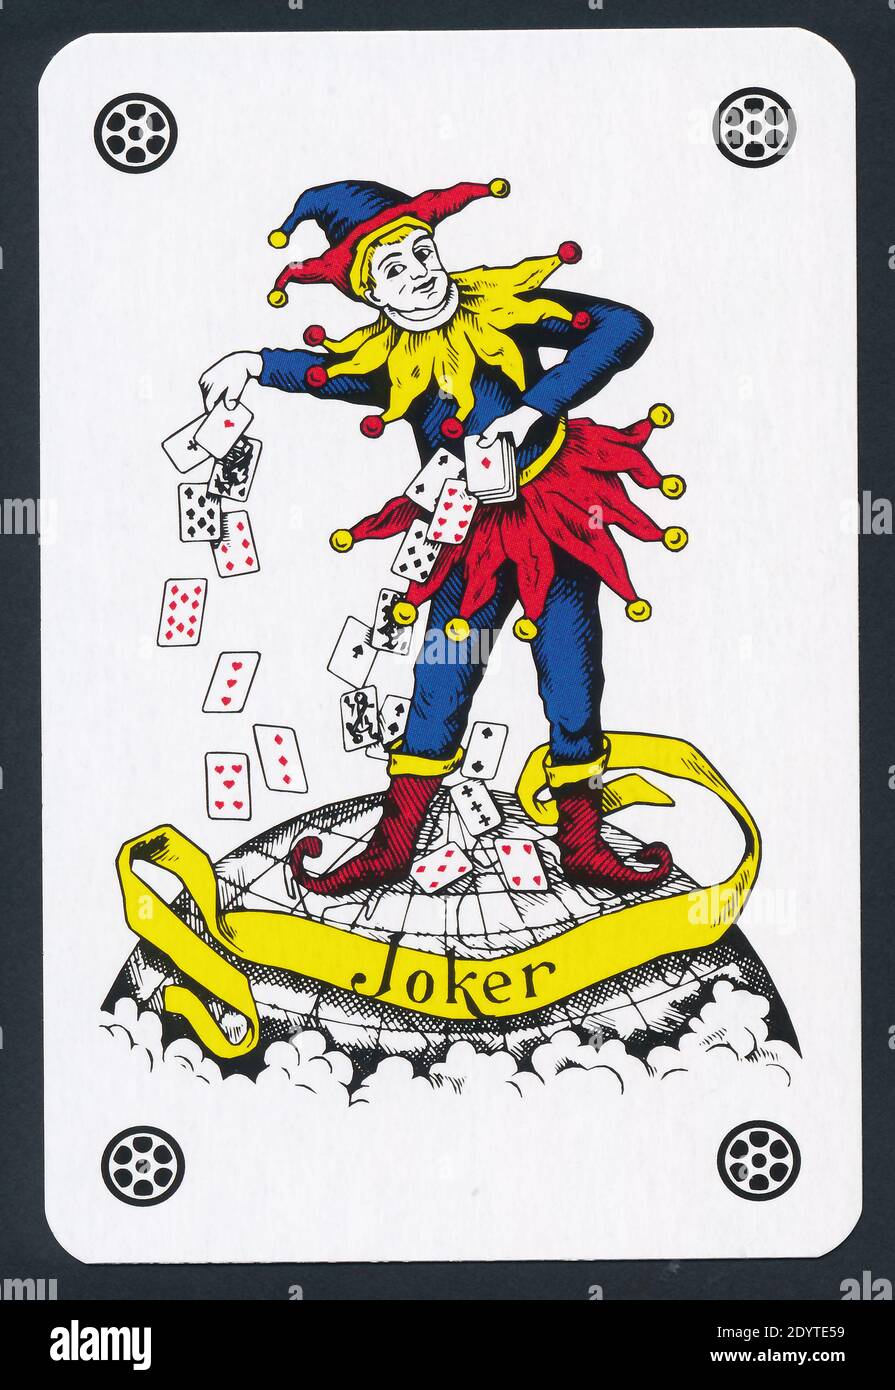 Joker Card Banque D Image Et Photos Page 2 Alamy